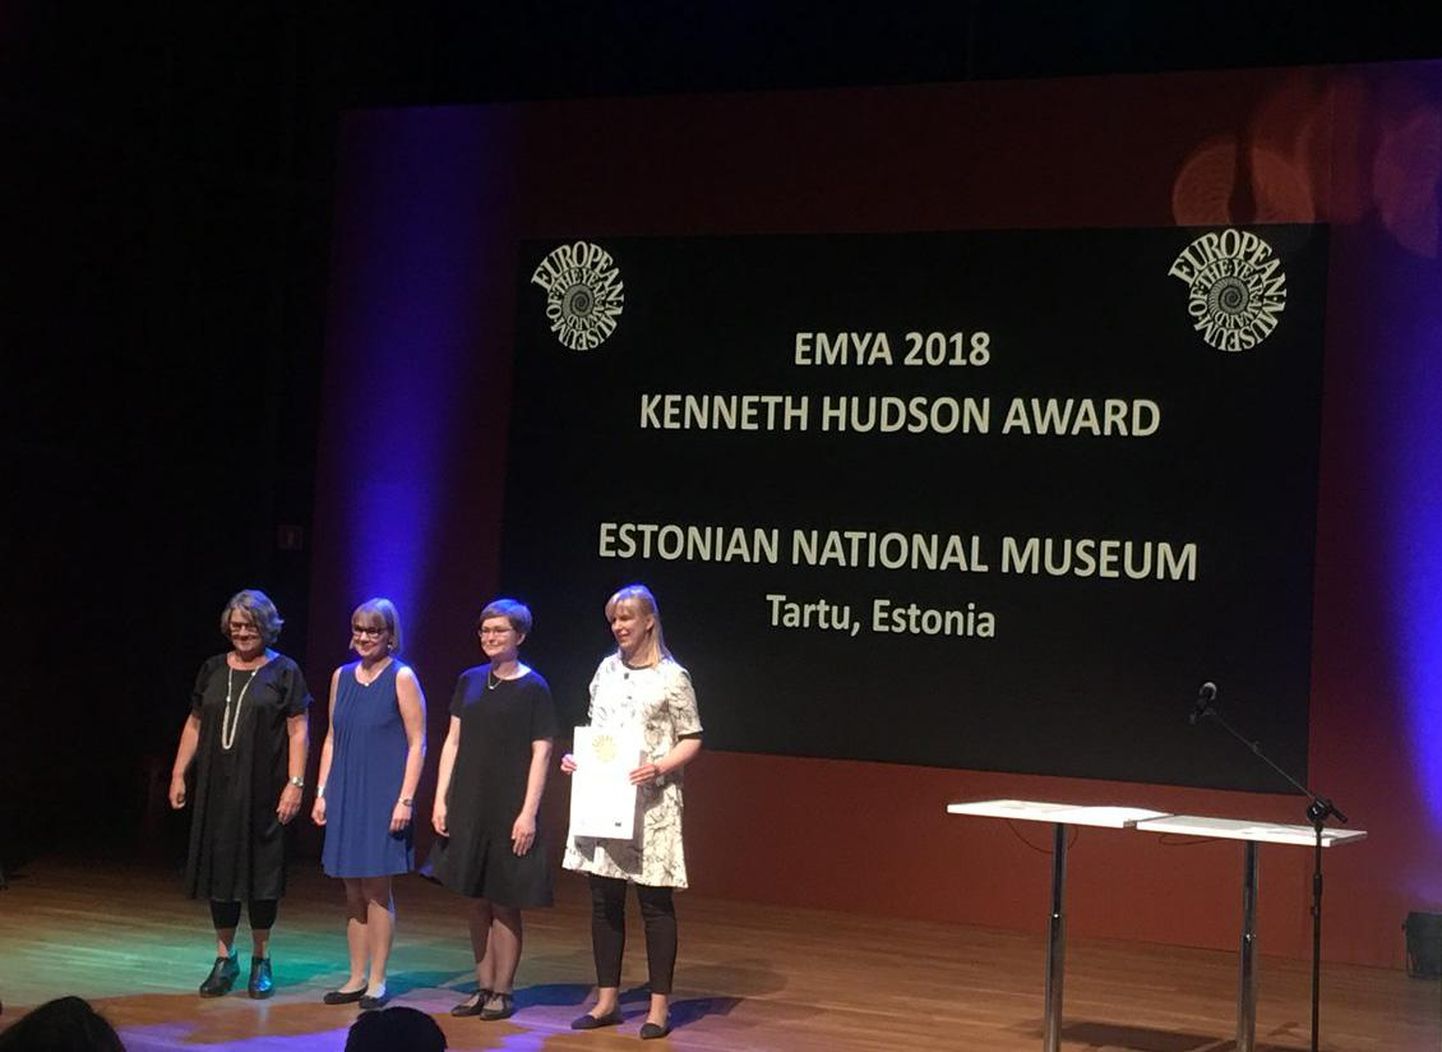 Euroopa muuseumifoorumi hoolekogu esimees Jette Sandahl andis laupäeval kätte hinnalise auhinna Eesti Rahva Muuseumi delegatsioonile koosseisus Riina Reinvelt (vasakult), Agnes Aljas ja Pille Runnel. Delegatsiooni liikmed sattusid laval sinimustvalgesse järjestusse kogemata.